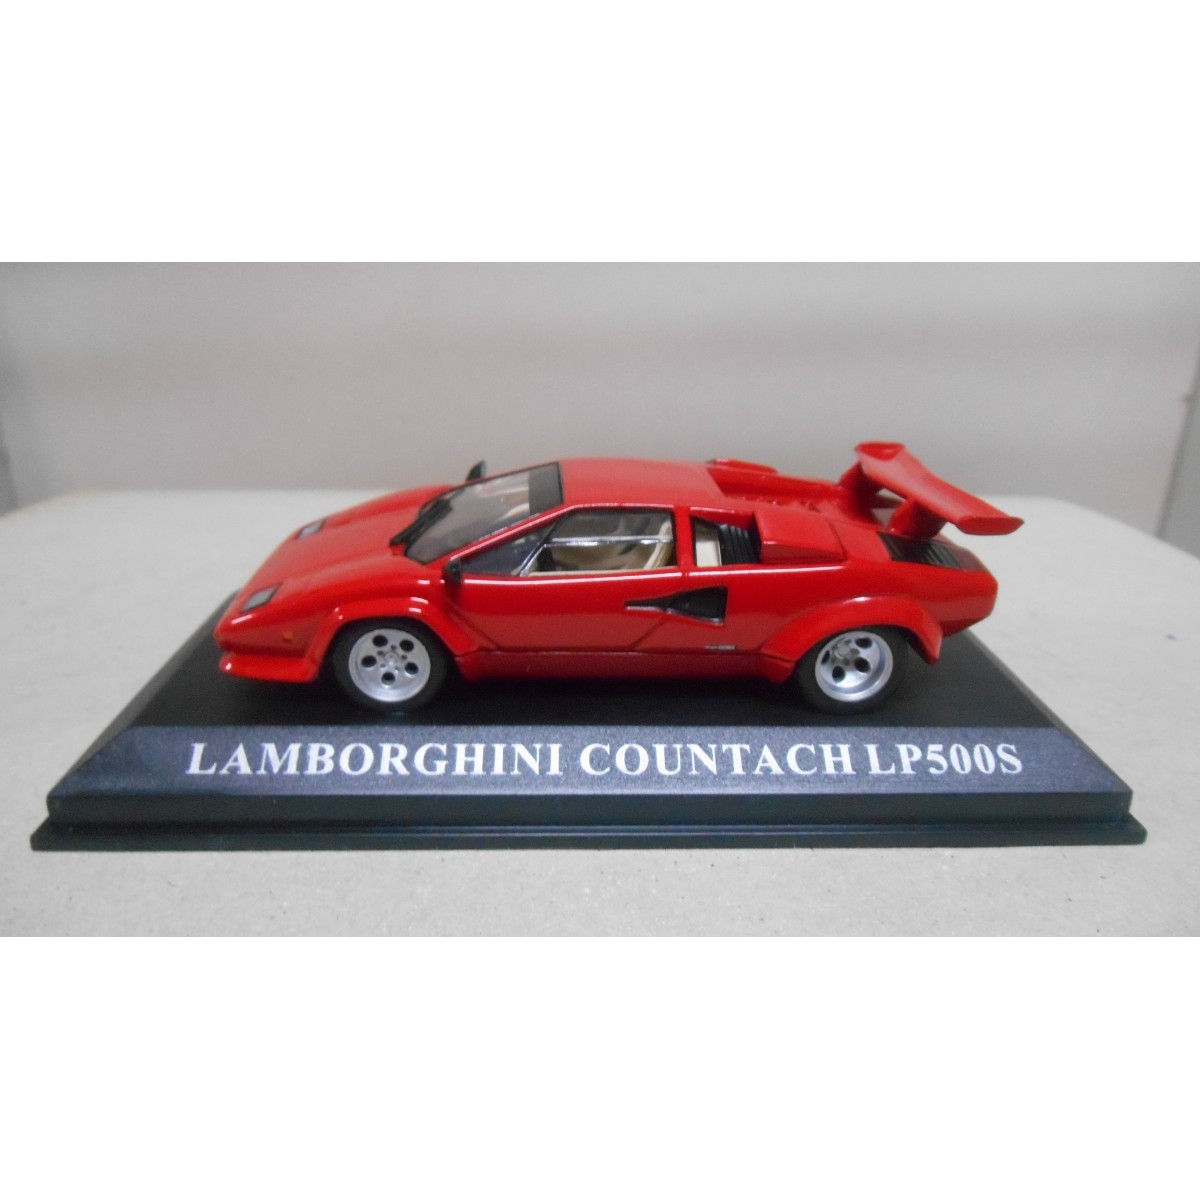 LAMBORGHINI COUNTACH LP500S ROJO/RED DREAM CARS 1:43 ALTAYA IXO - BCN STOCK  CARS